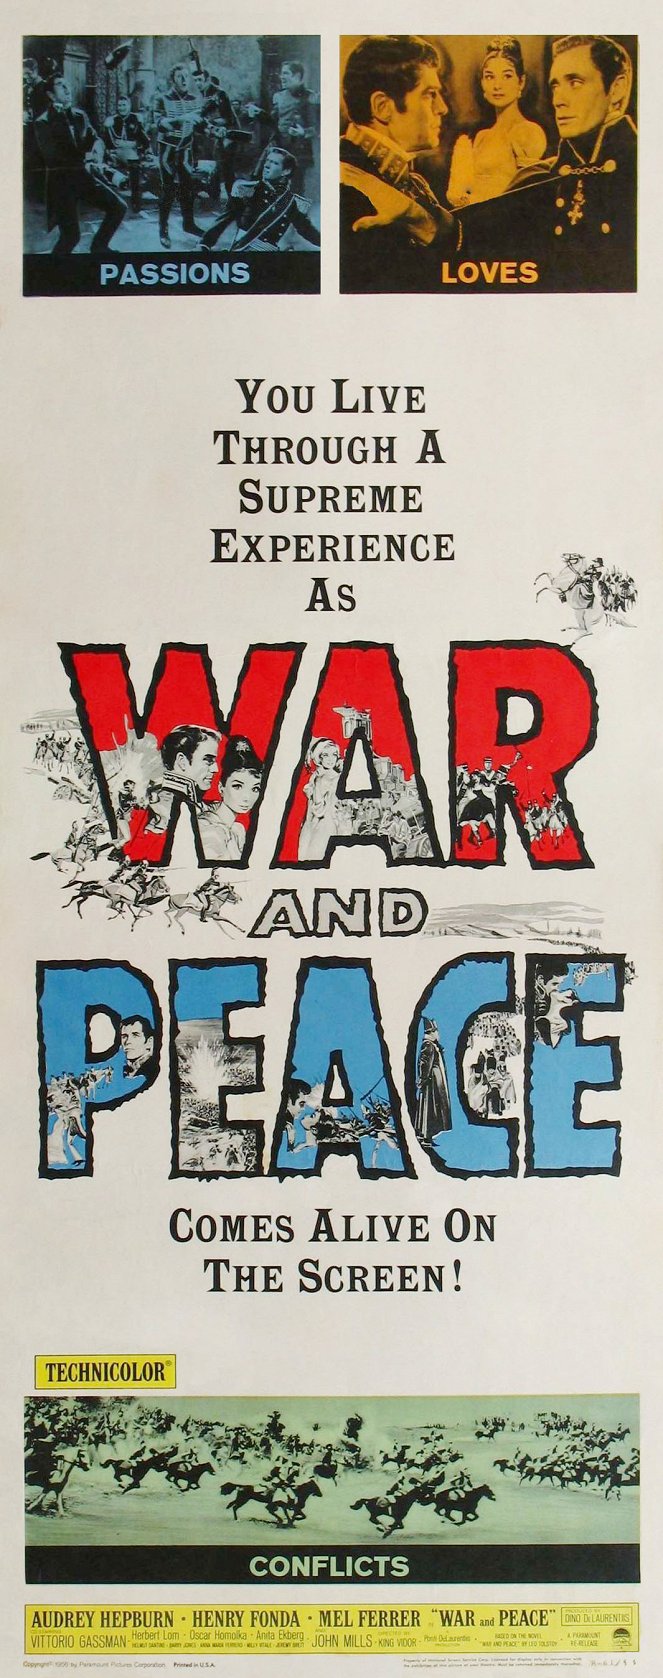 Guerre et paix - Affiches